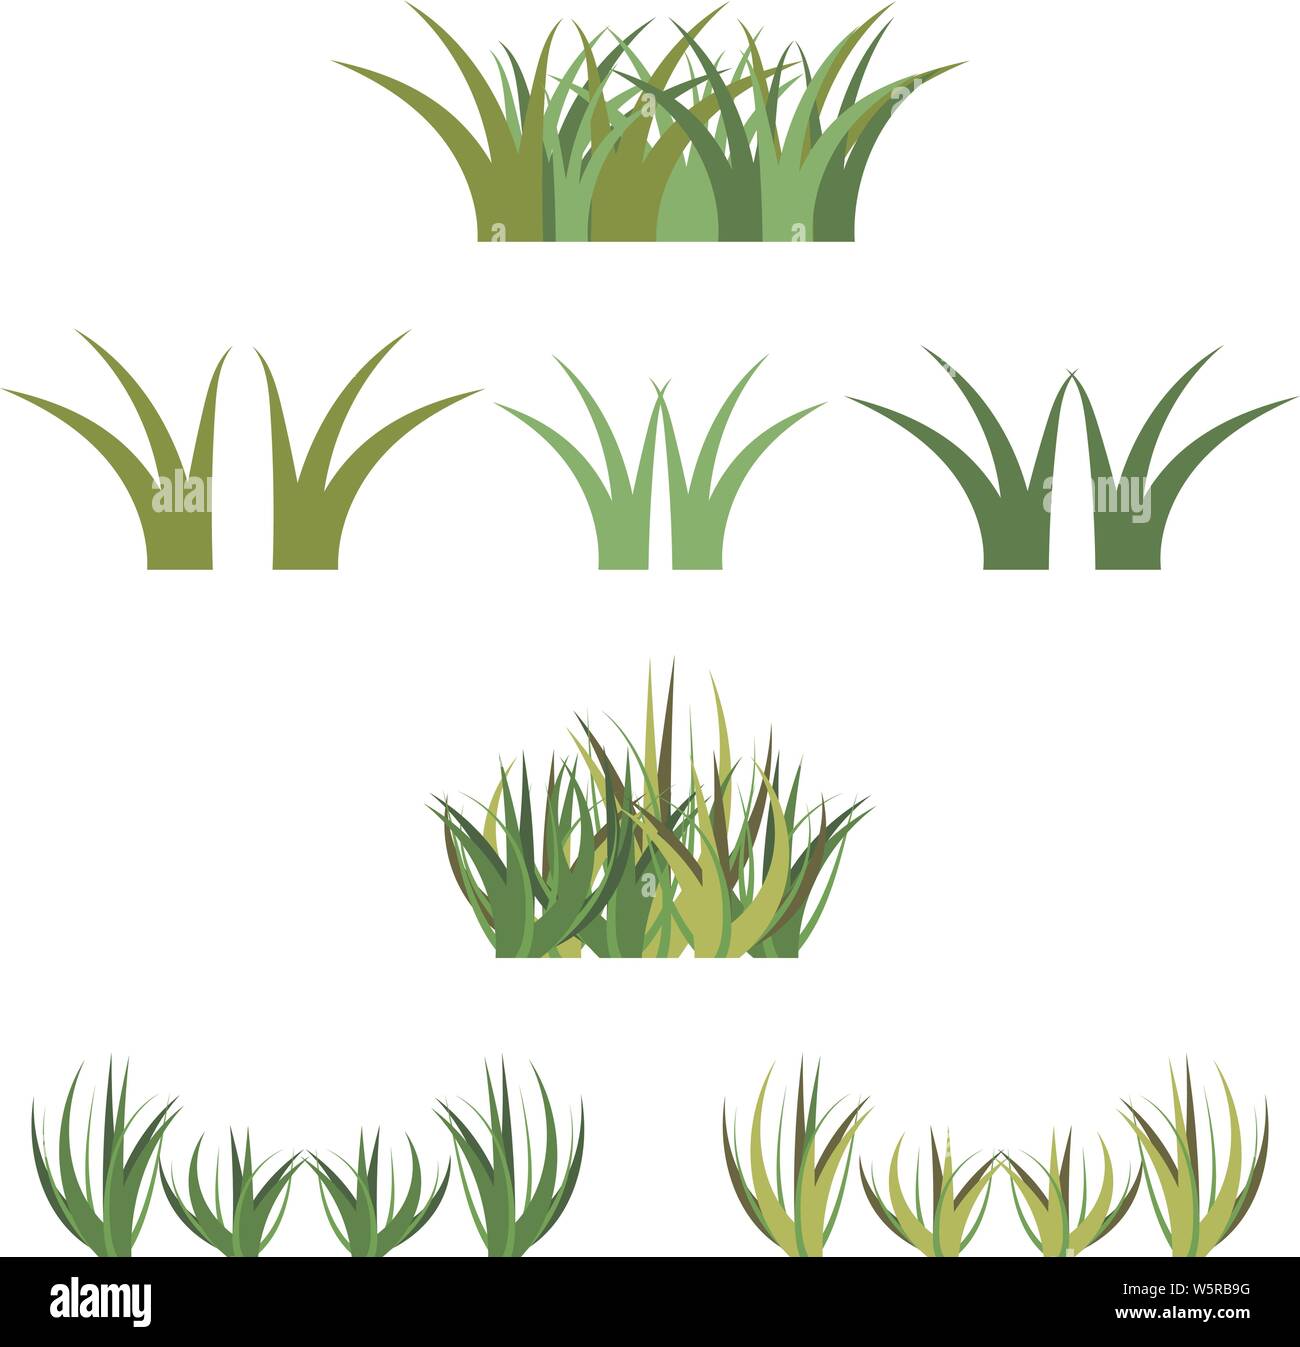 Der Vektor grünes Gras horisontal Trauben, isoliert auf Weiss. Cartoon Requisiten Dekoration, Vielzahl von Vektor Gras grün und Hellgrün Farben. Stock Vektor